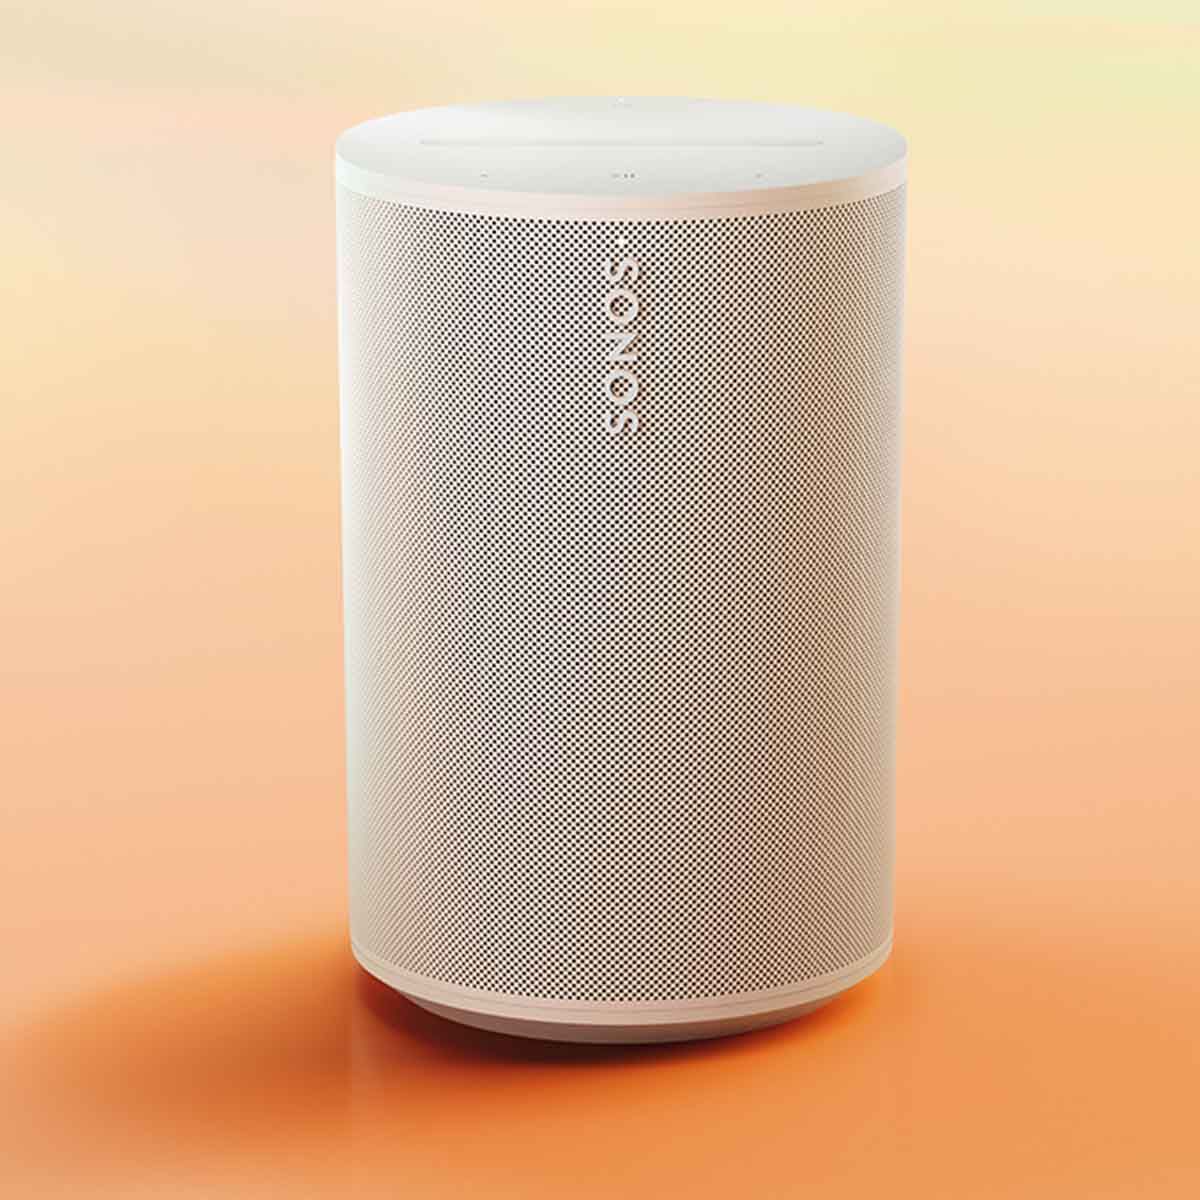 Sonos Era 100 Smart Speaker - White - front view on tie-die background